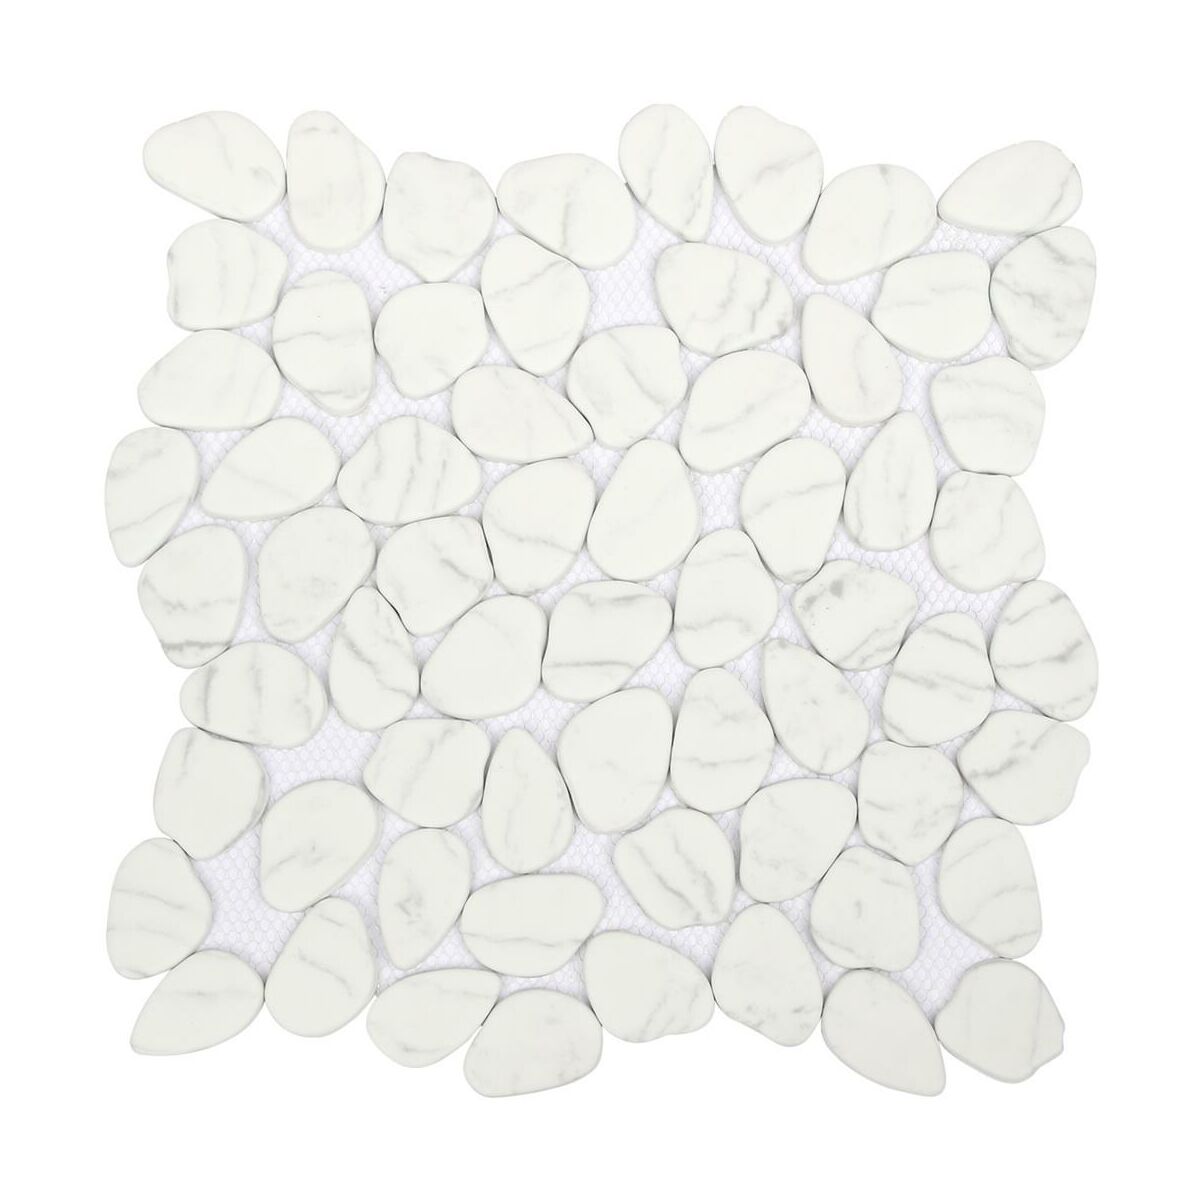 Mozaika Galeto White Mat 30.5 x 30.5 Artens